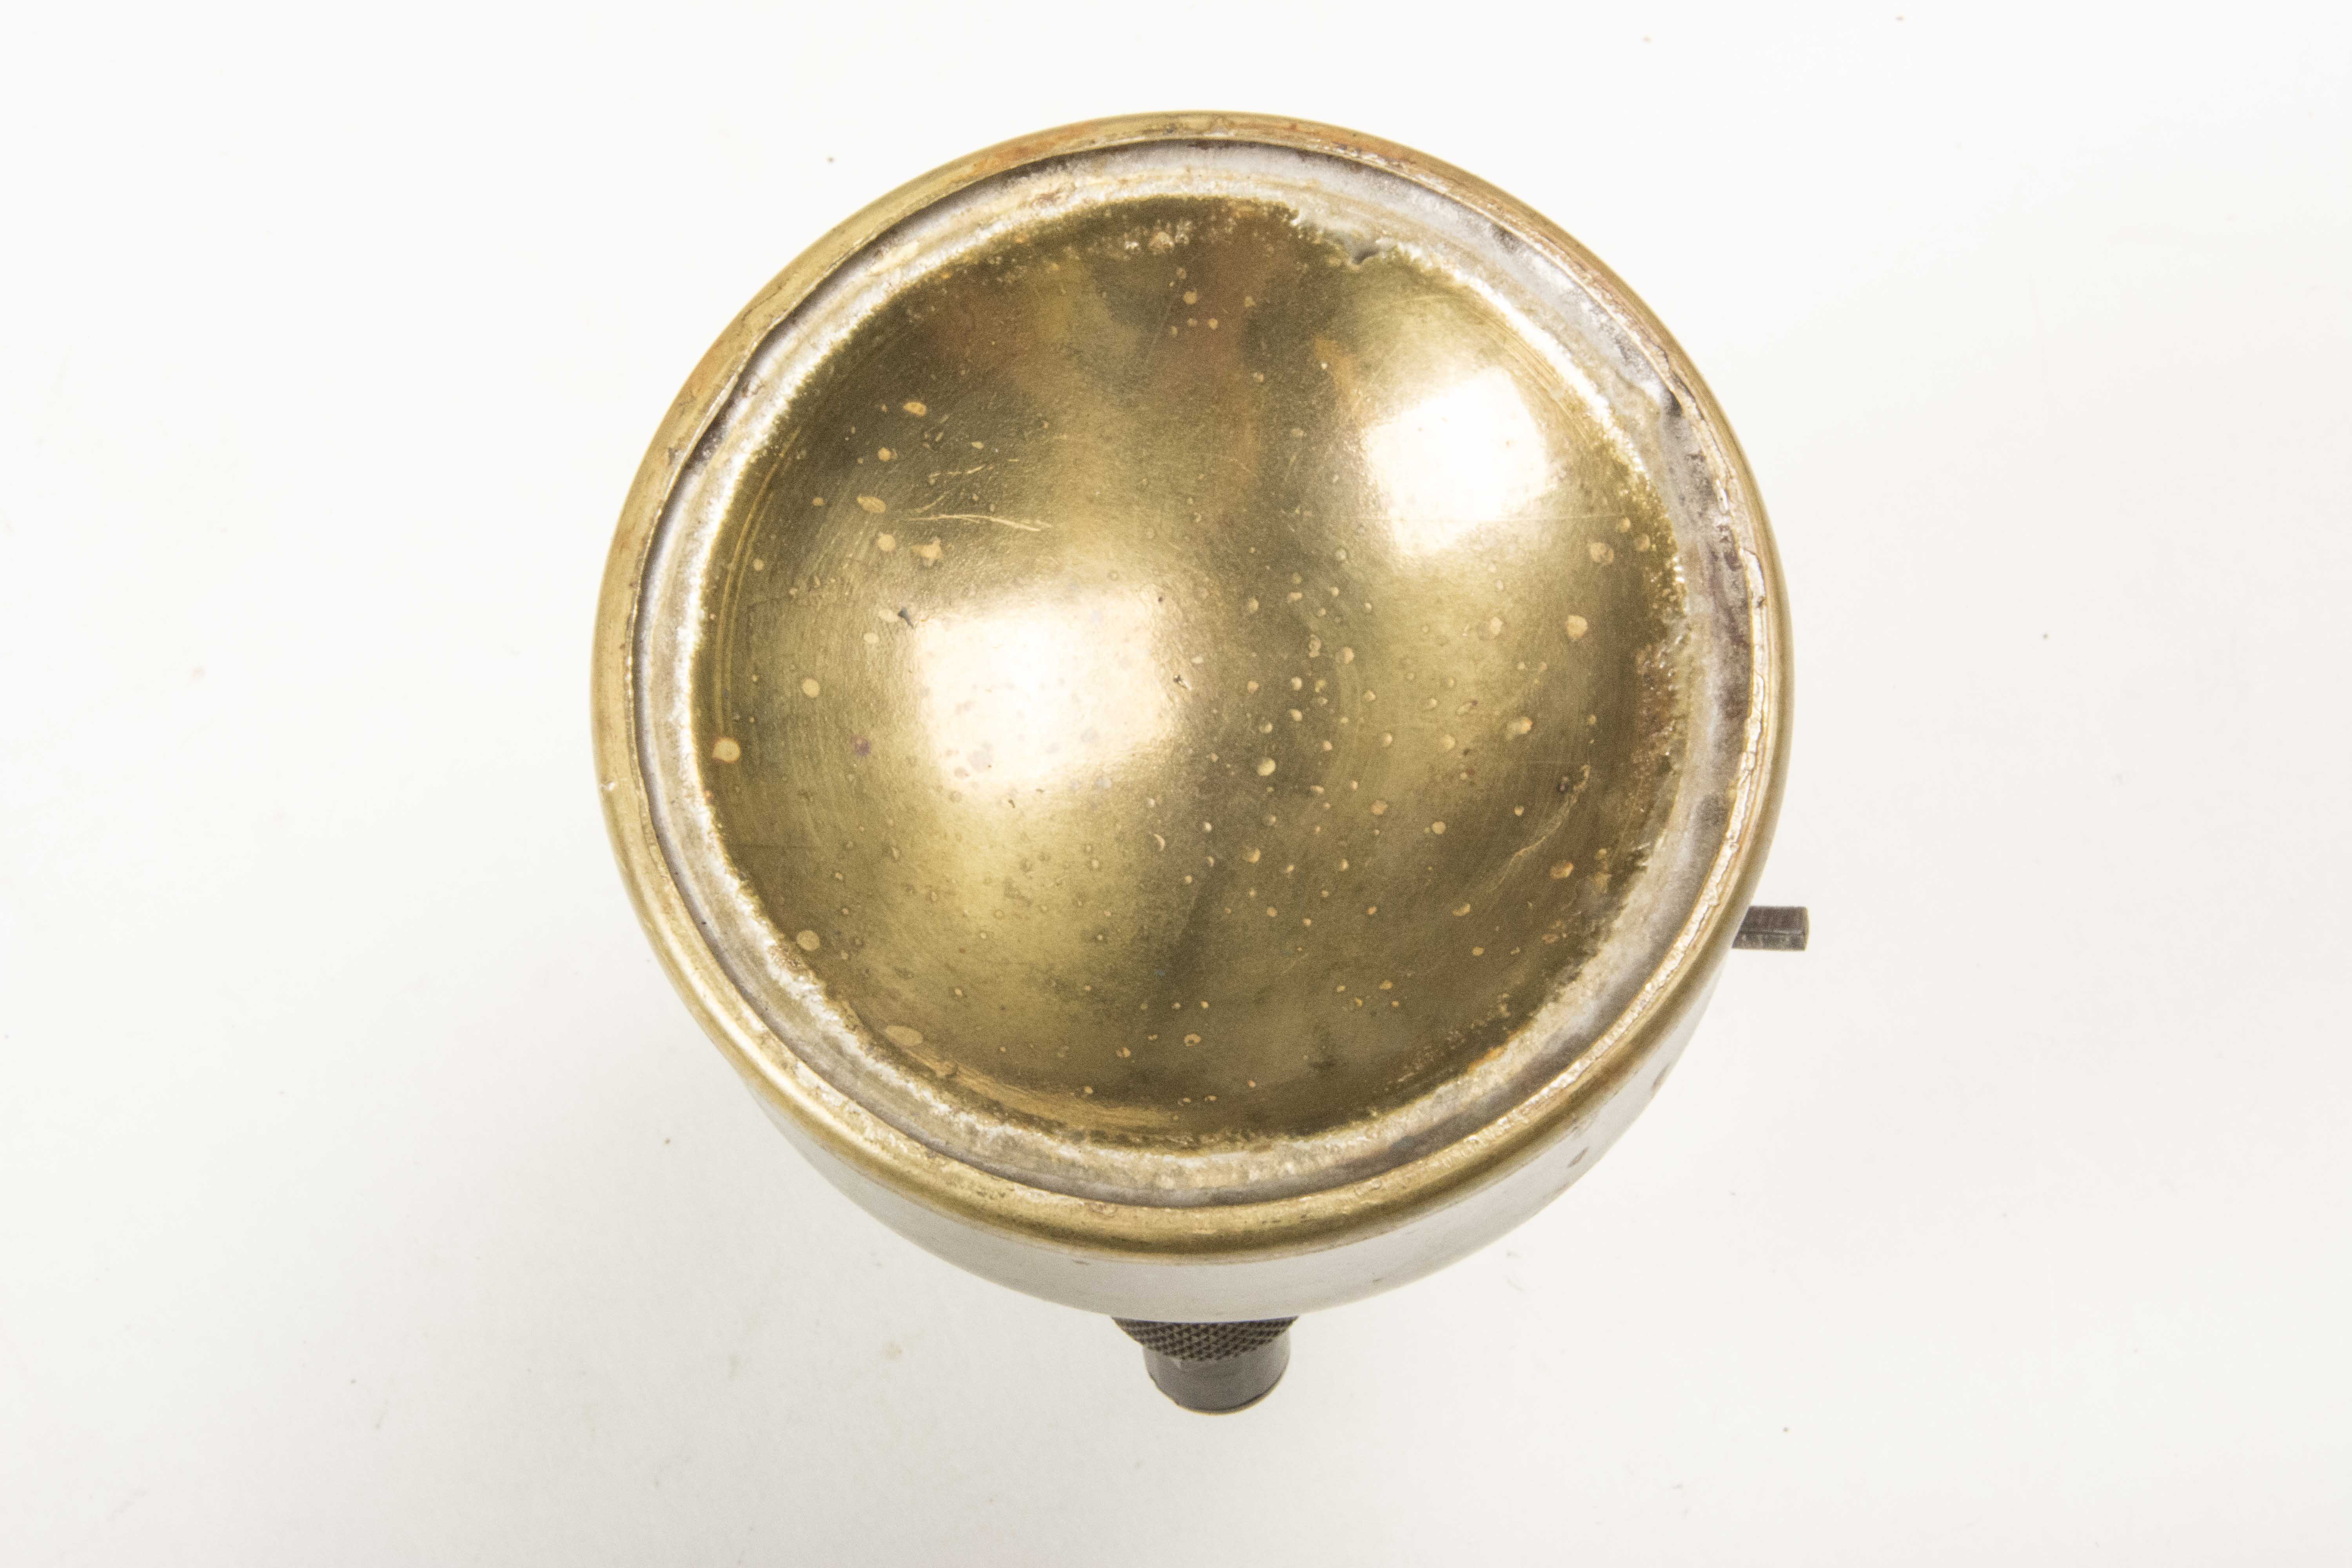 Old Garterbelt Frau Naked Circular Brass Stove Vintage